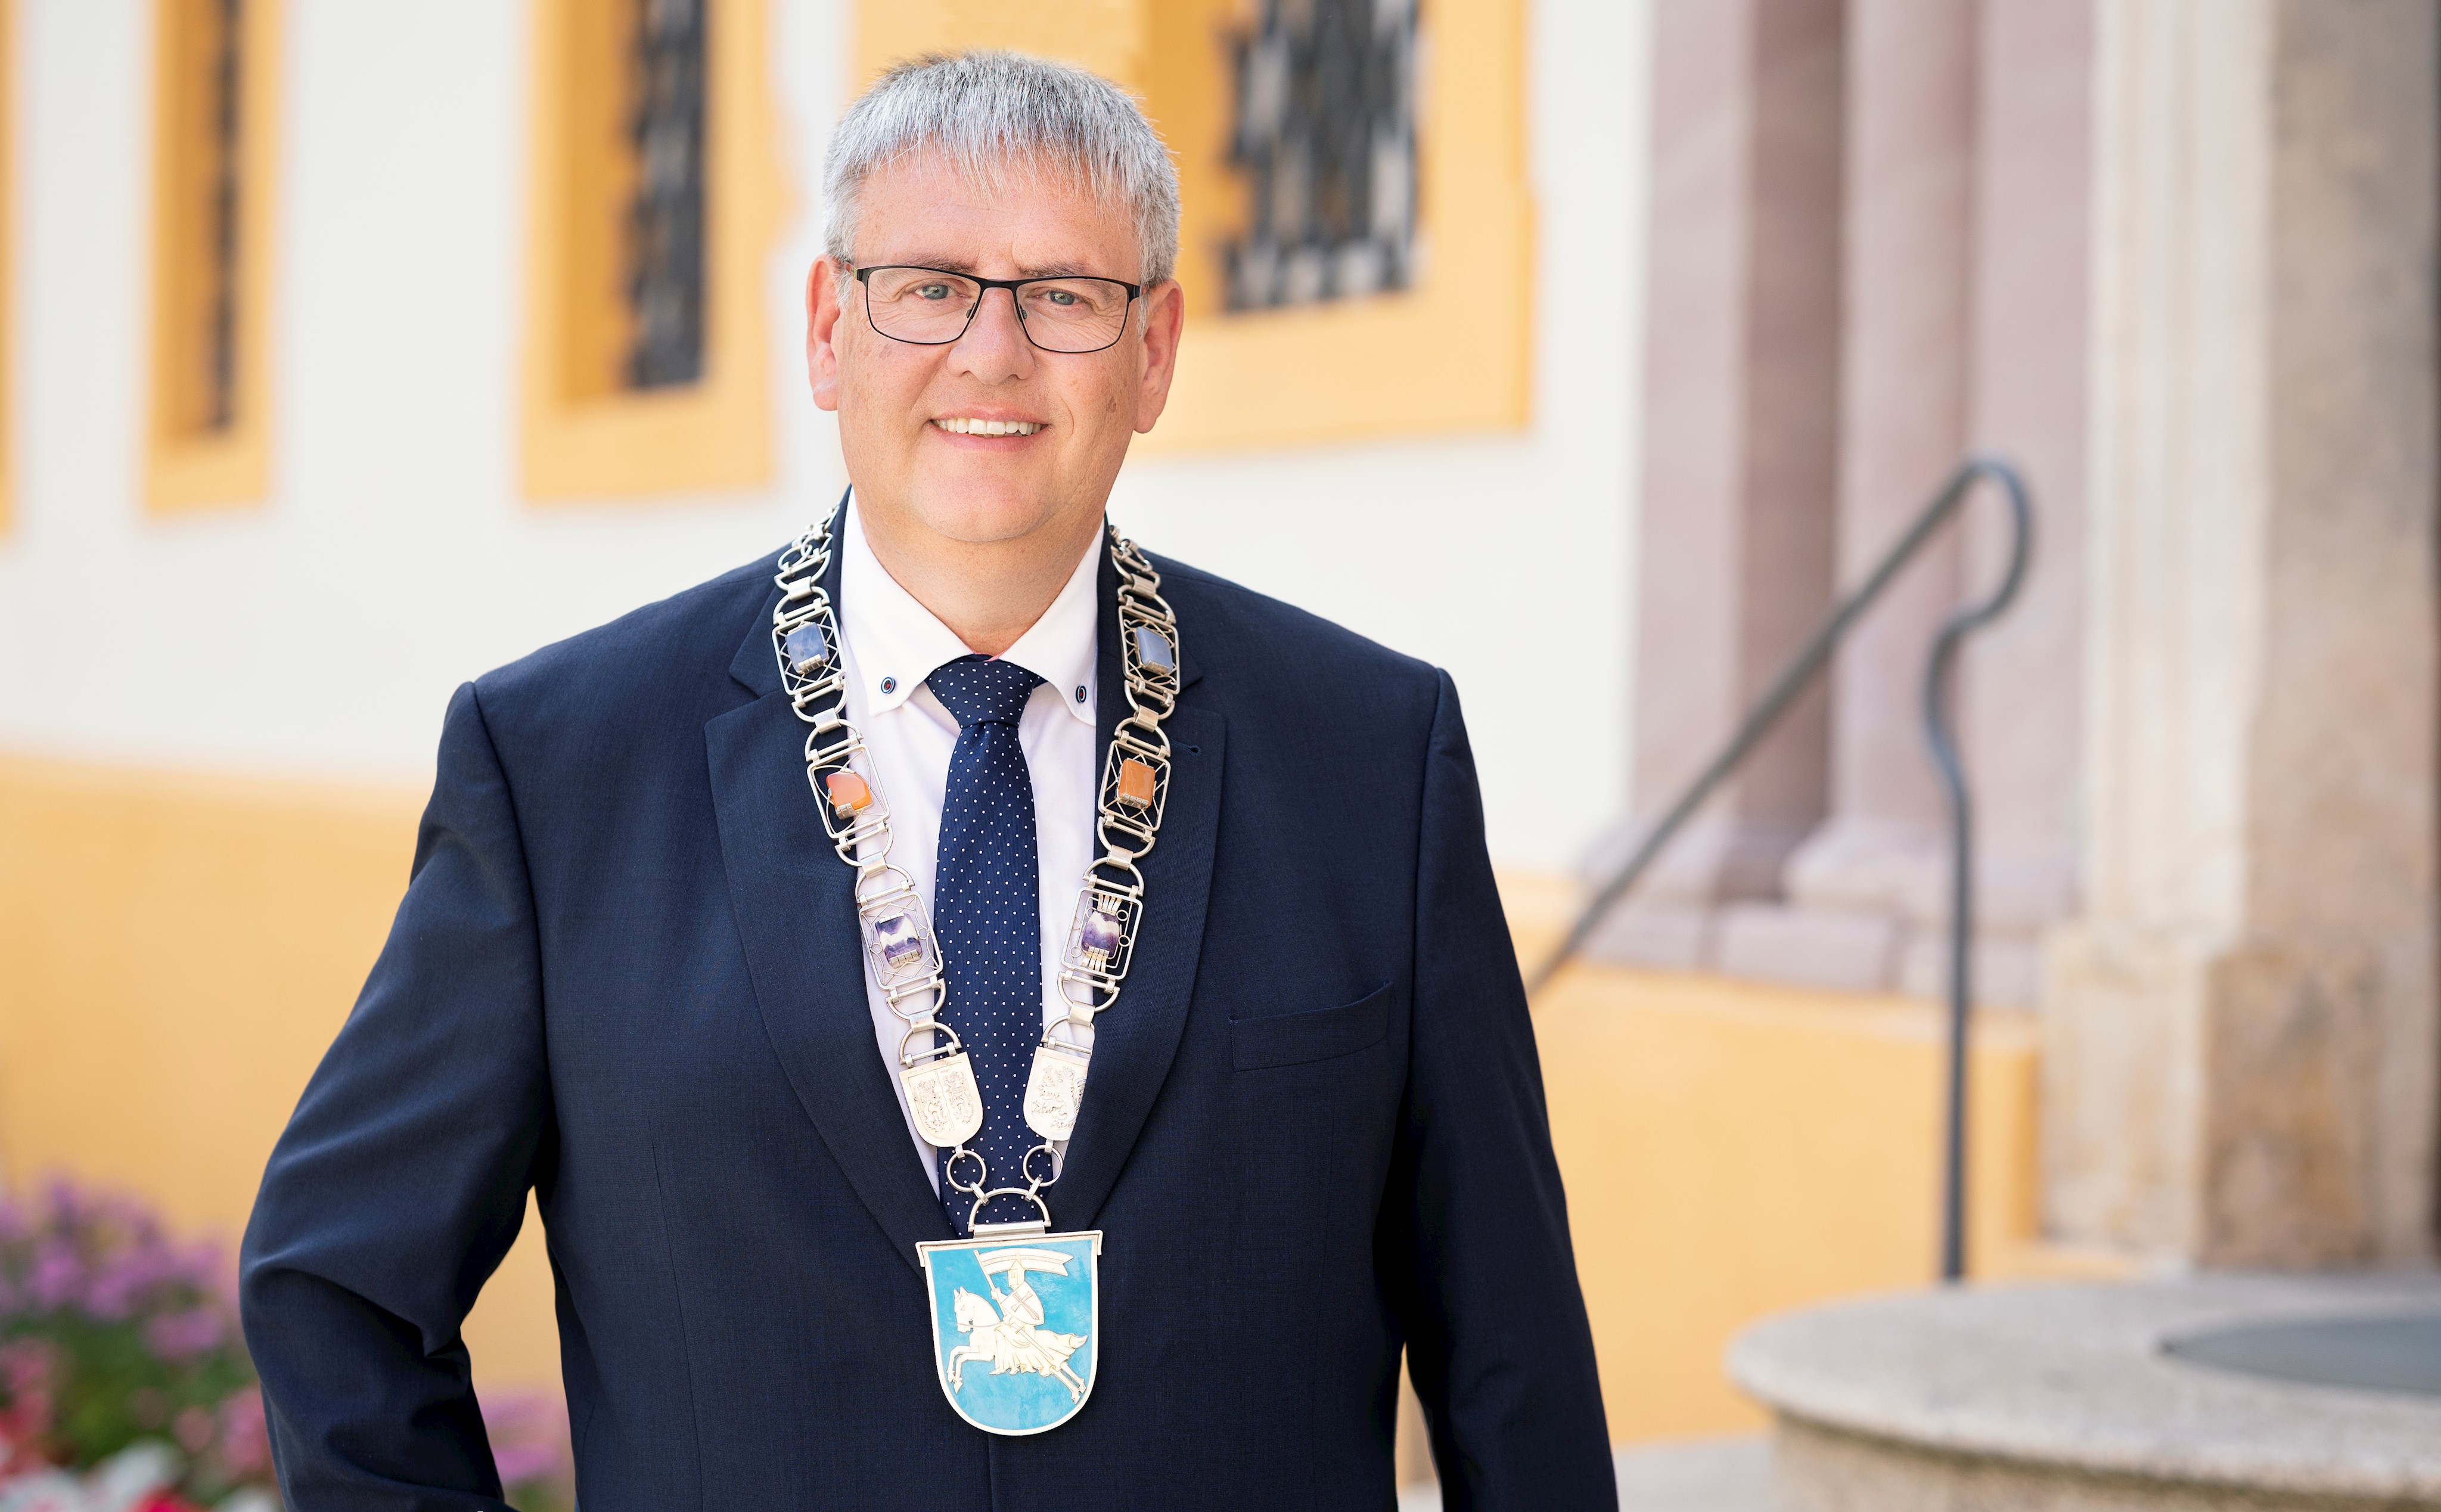 Erster Bürgermeister Herbert Tischhöfer (seit 01.05.2020)